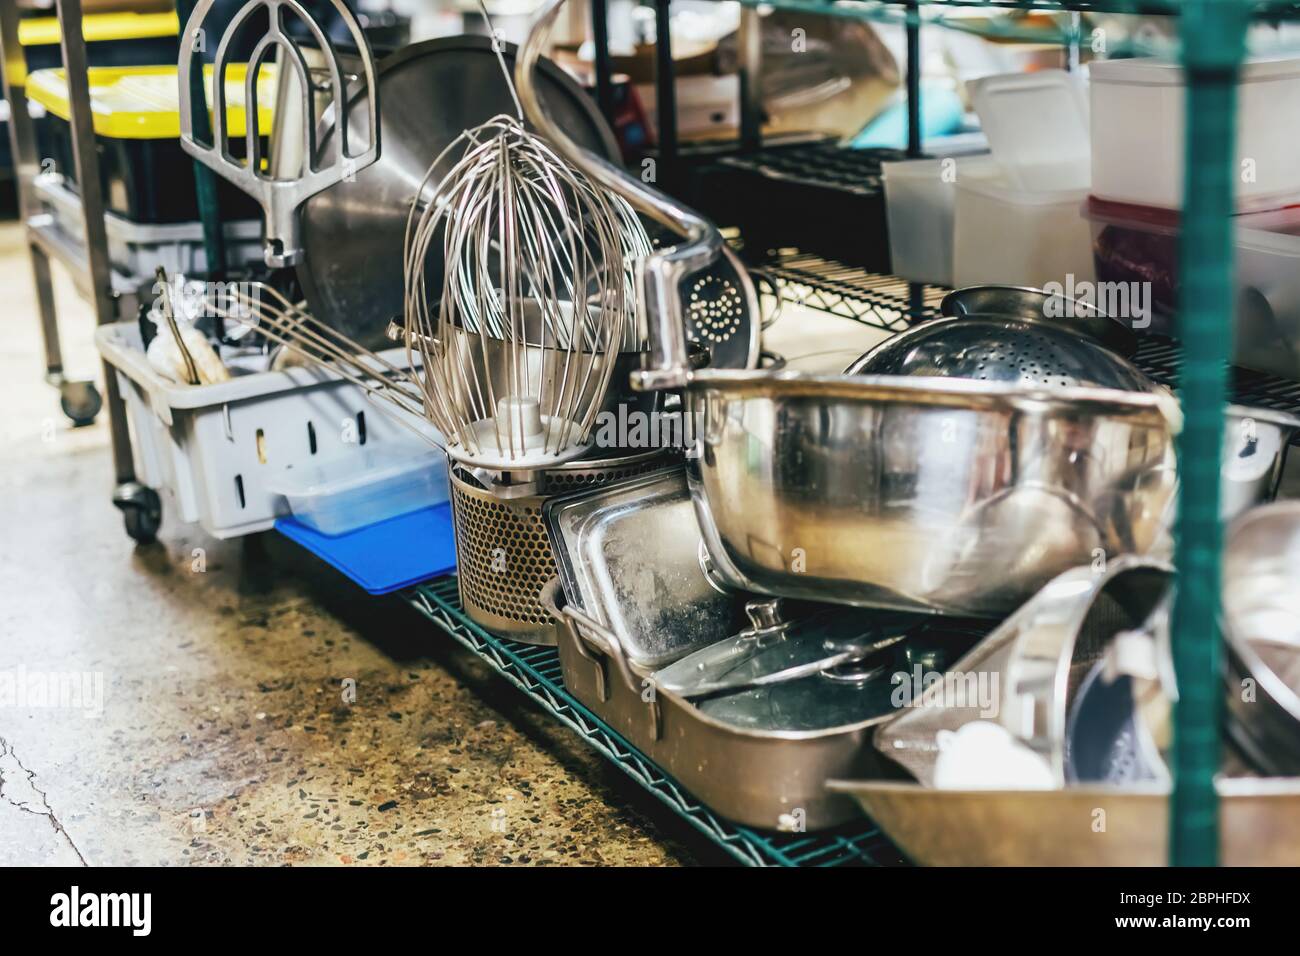 Utensili da cucina su ripiani in una cucina industriale. Foto Stock